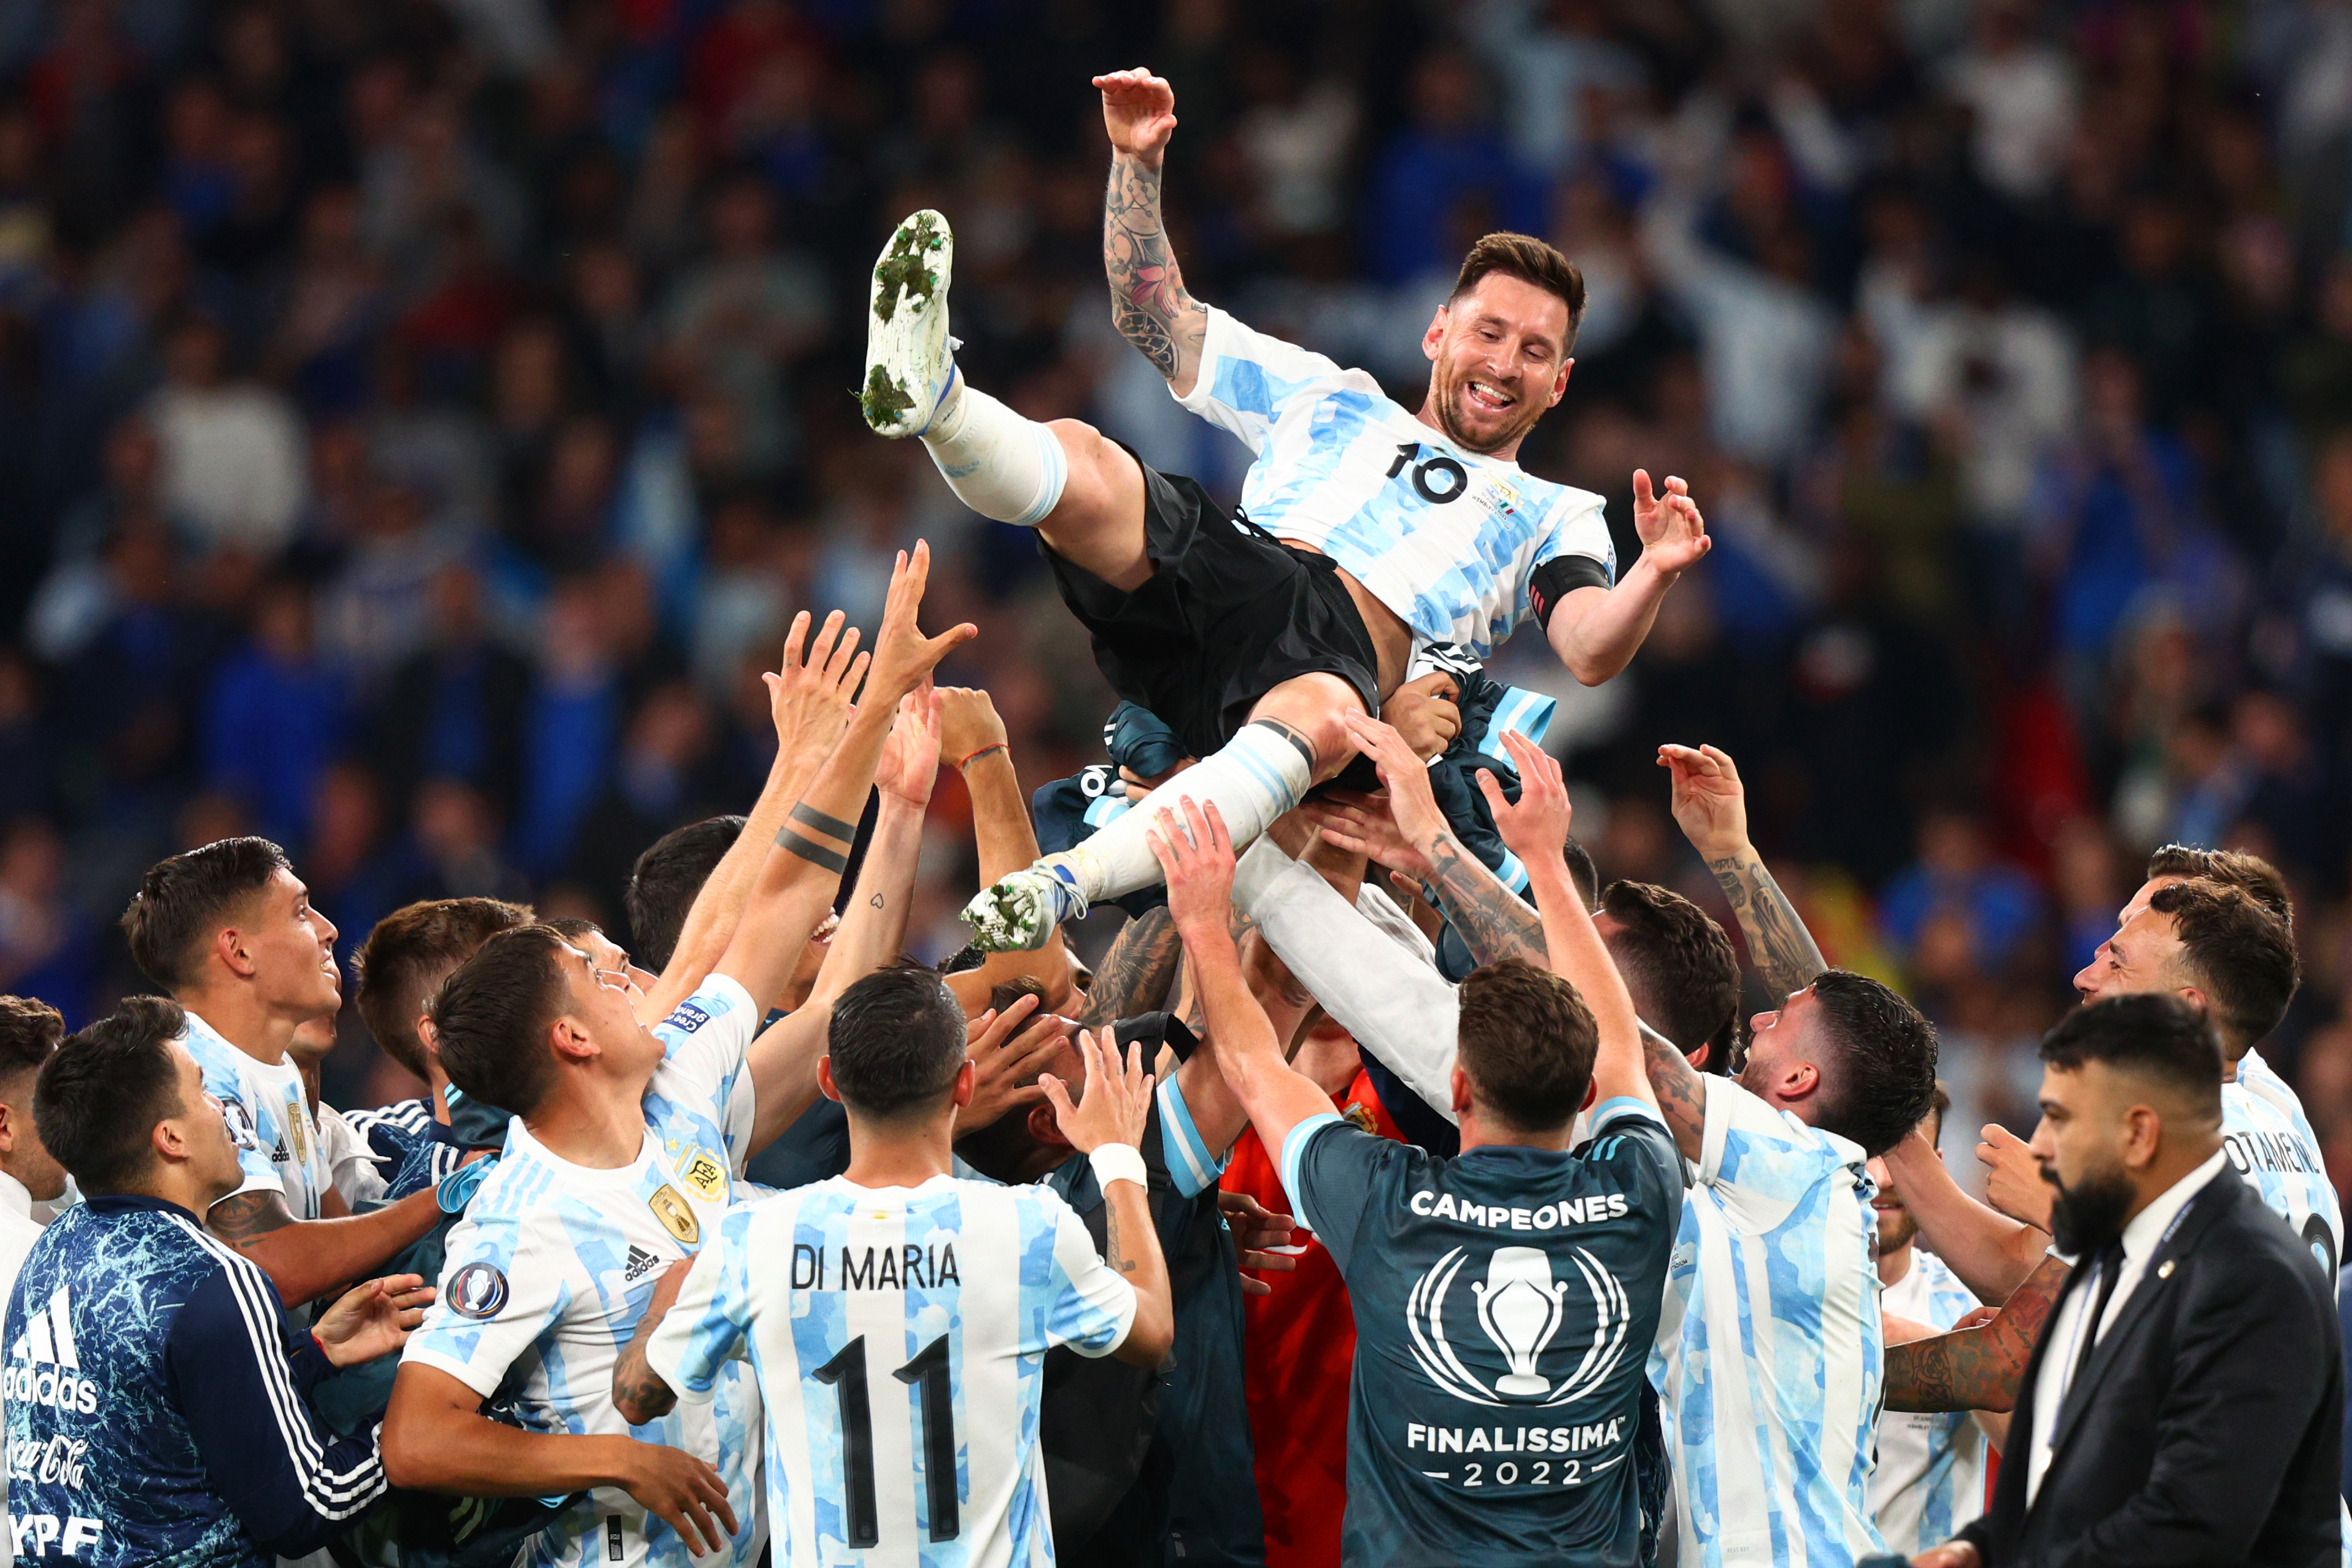 Sau một hành trình đầy cảm xúc và gian truân, Argentina đã giành chiến thắng vô địch tại giải đấu danh giá. Hãy cùng đón xem hình ảnh vô địch của Argentina và cảm nhận cùng với đội tuyển này!